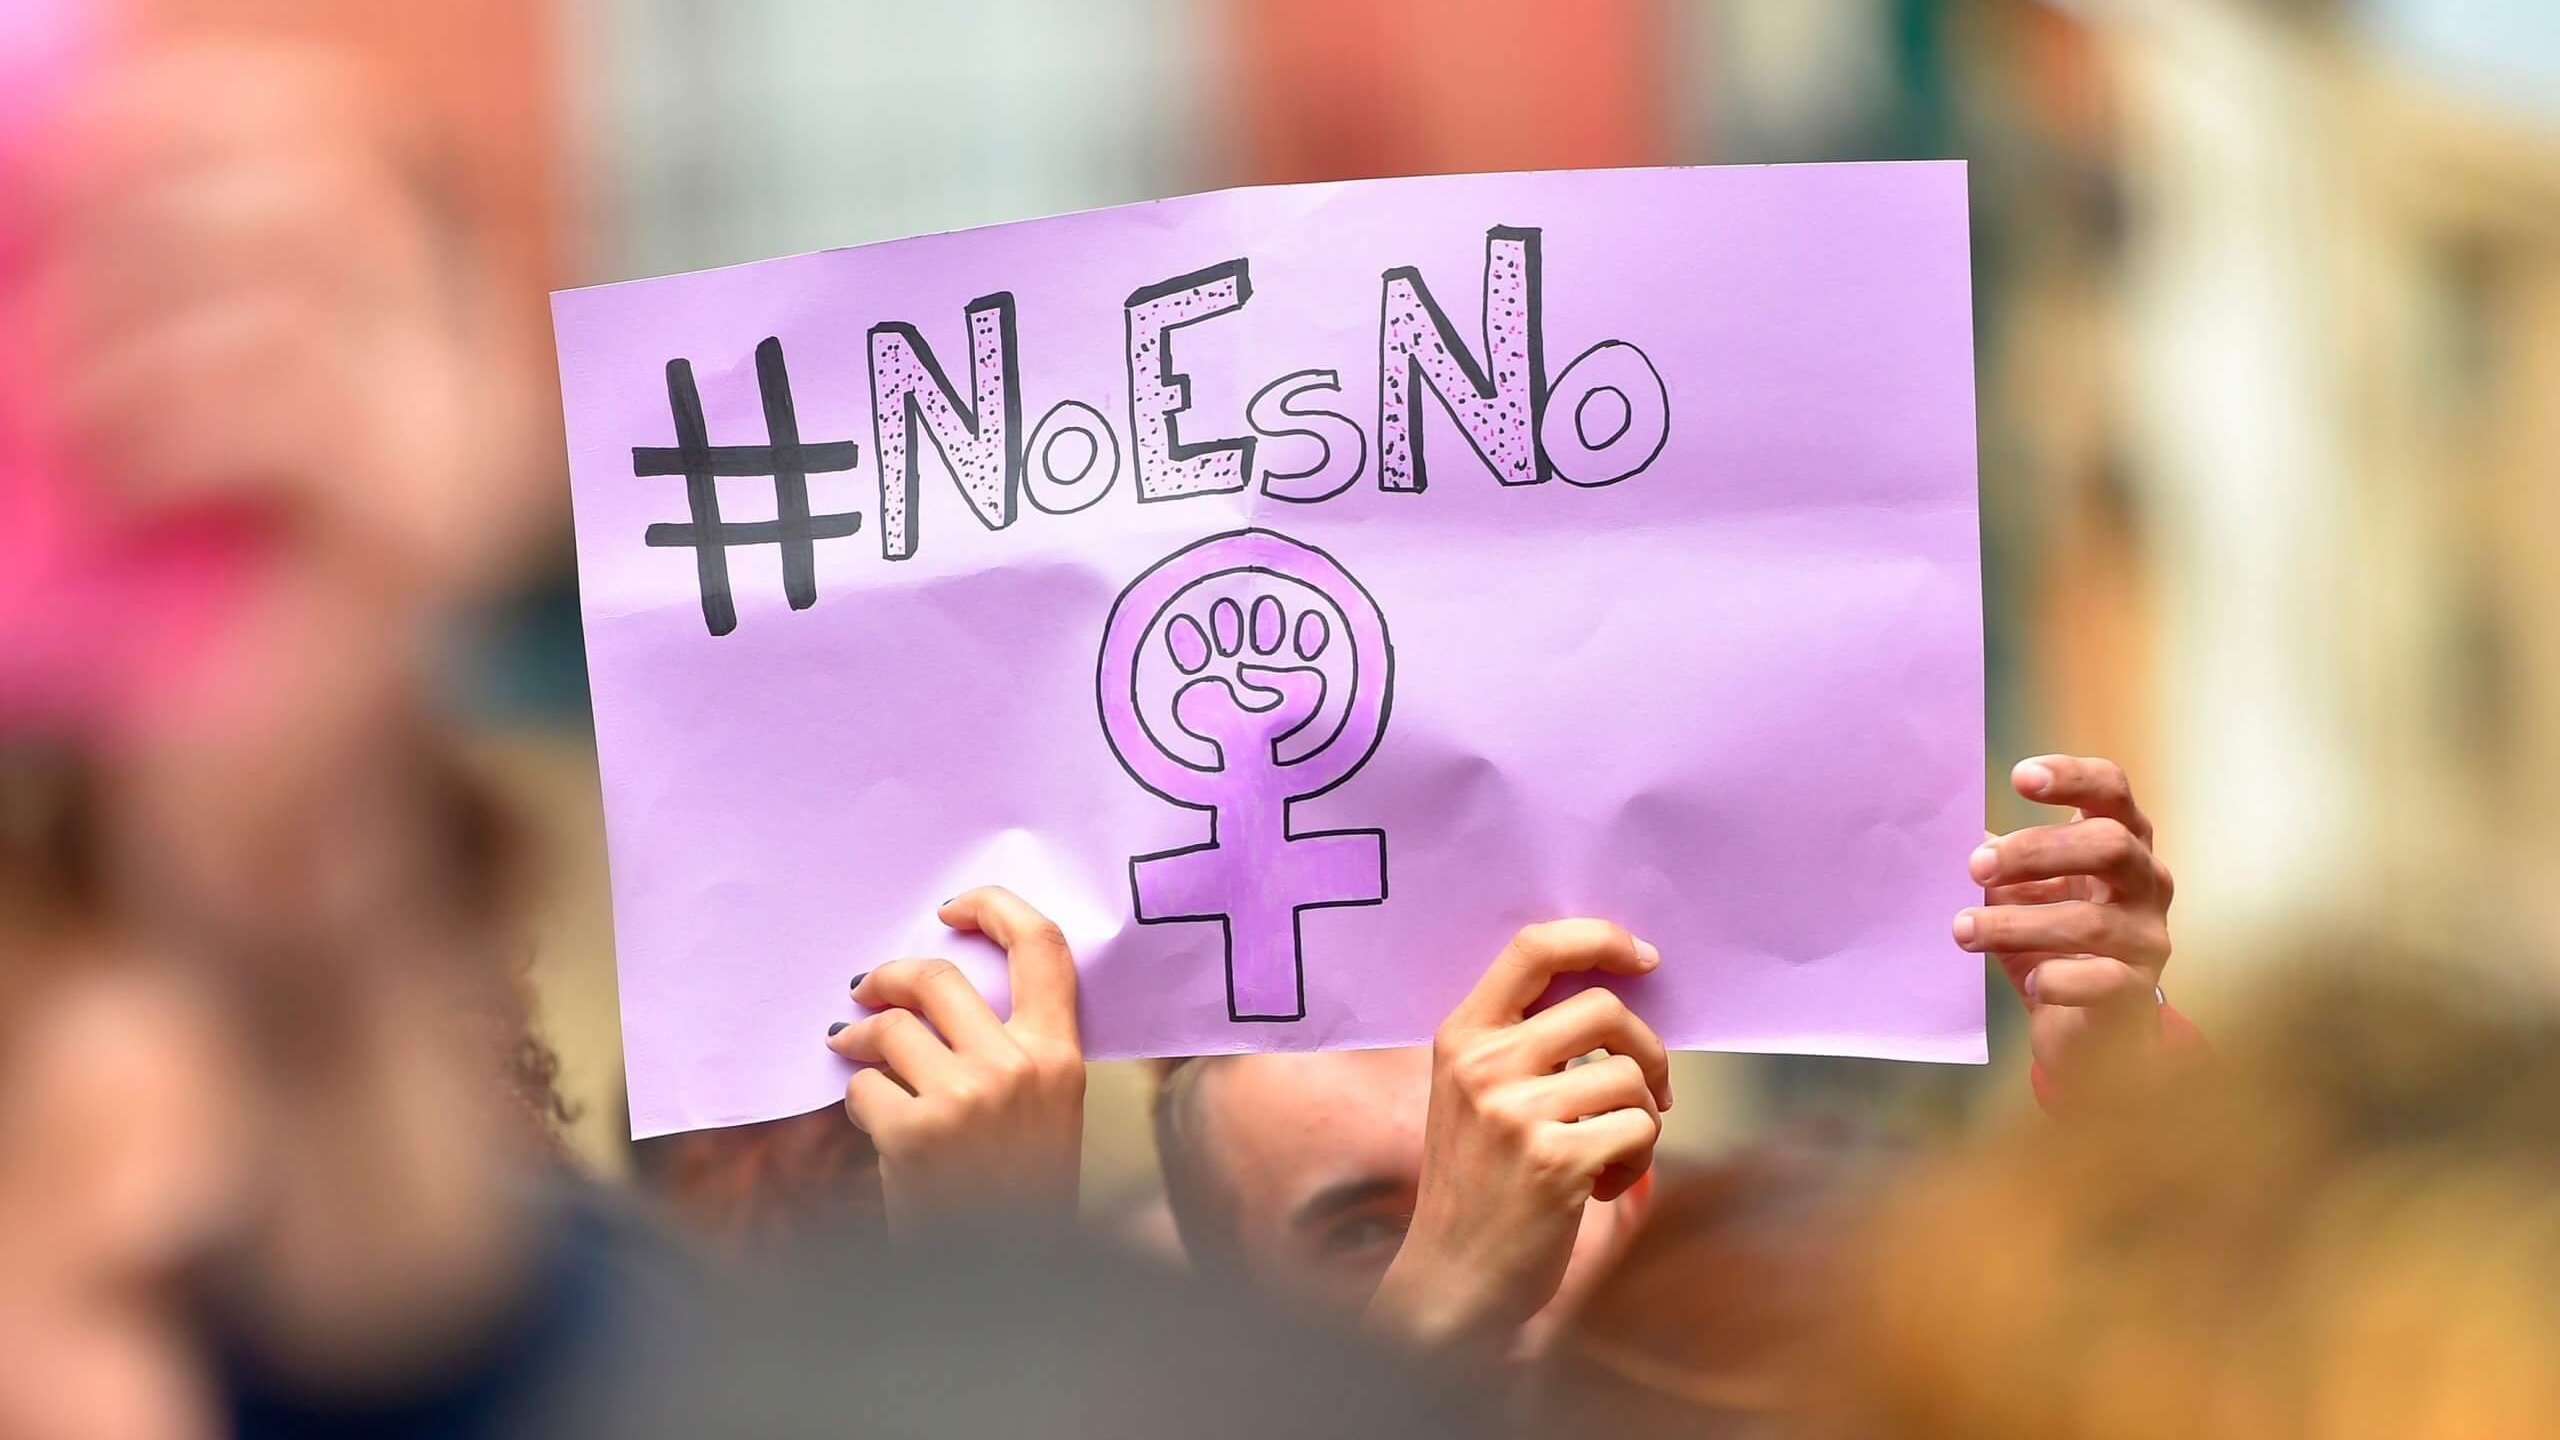 Le 10 mai 2018, des manifestants tiennent une pancarte indiquant "Non signifie non" à Pampelune, lors d'une manifestation contre l'acquittement de cinq hommes accusés de viol collectif sur une femme de 18 ans. - Les cinq hommes, âgés d'une vingtaine d'années, avaient été accusés d'avoir violé une femme, alors âgée de 18 ans, à l'entrée d'un immeuble à Pampelune le 7 juillet 2016, au début de la semaine de courses de taureaux de San Fermin. Les hommes ont été acquittés de l'agression sexuelle, qui inclut le viol, mais condamnés à neuf ans pour le délit mineur d'abus sexuel, ce qui, selon la loi espagnole, implique qu'il n'y a pas eu de violence ou d'intimidation.